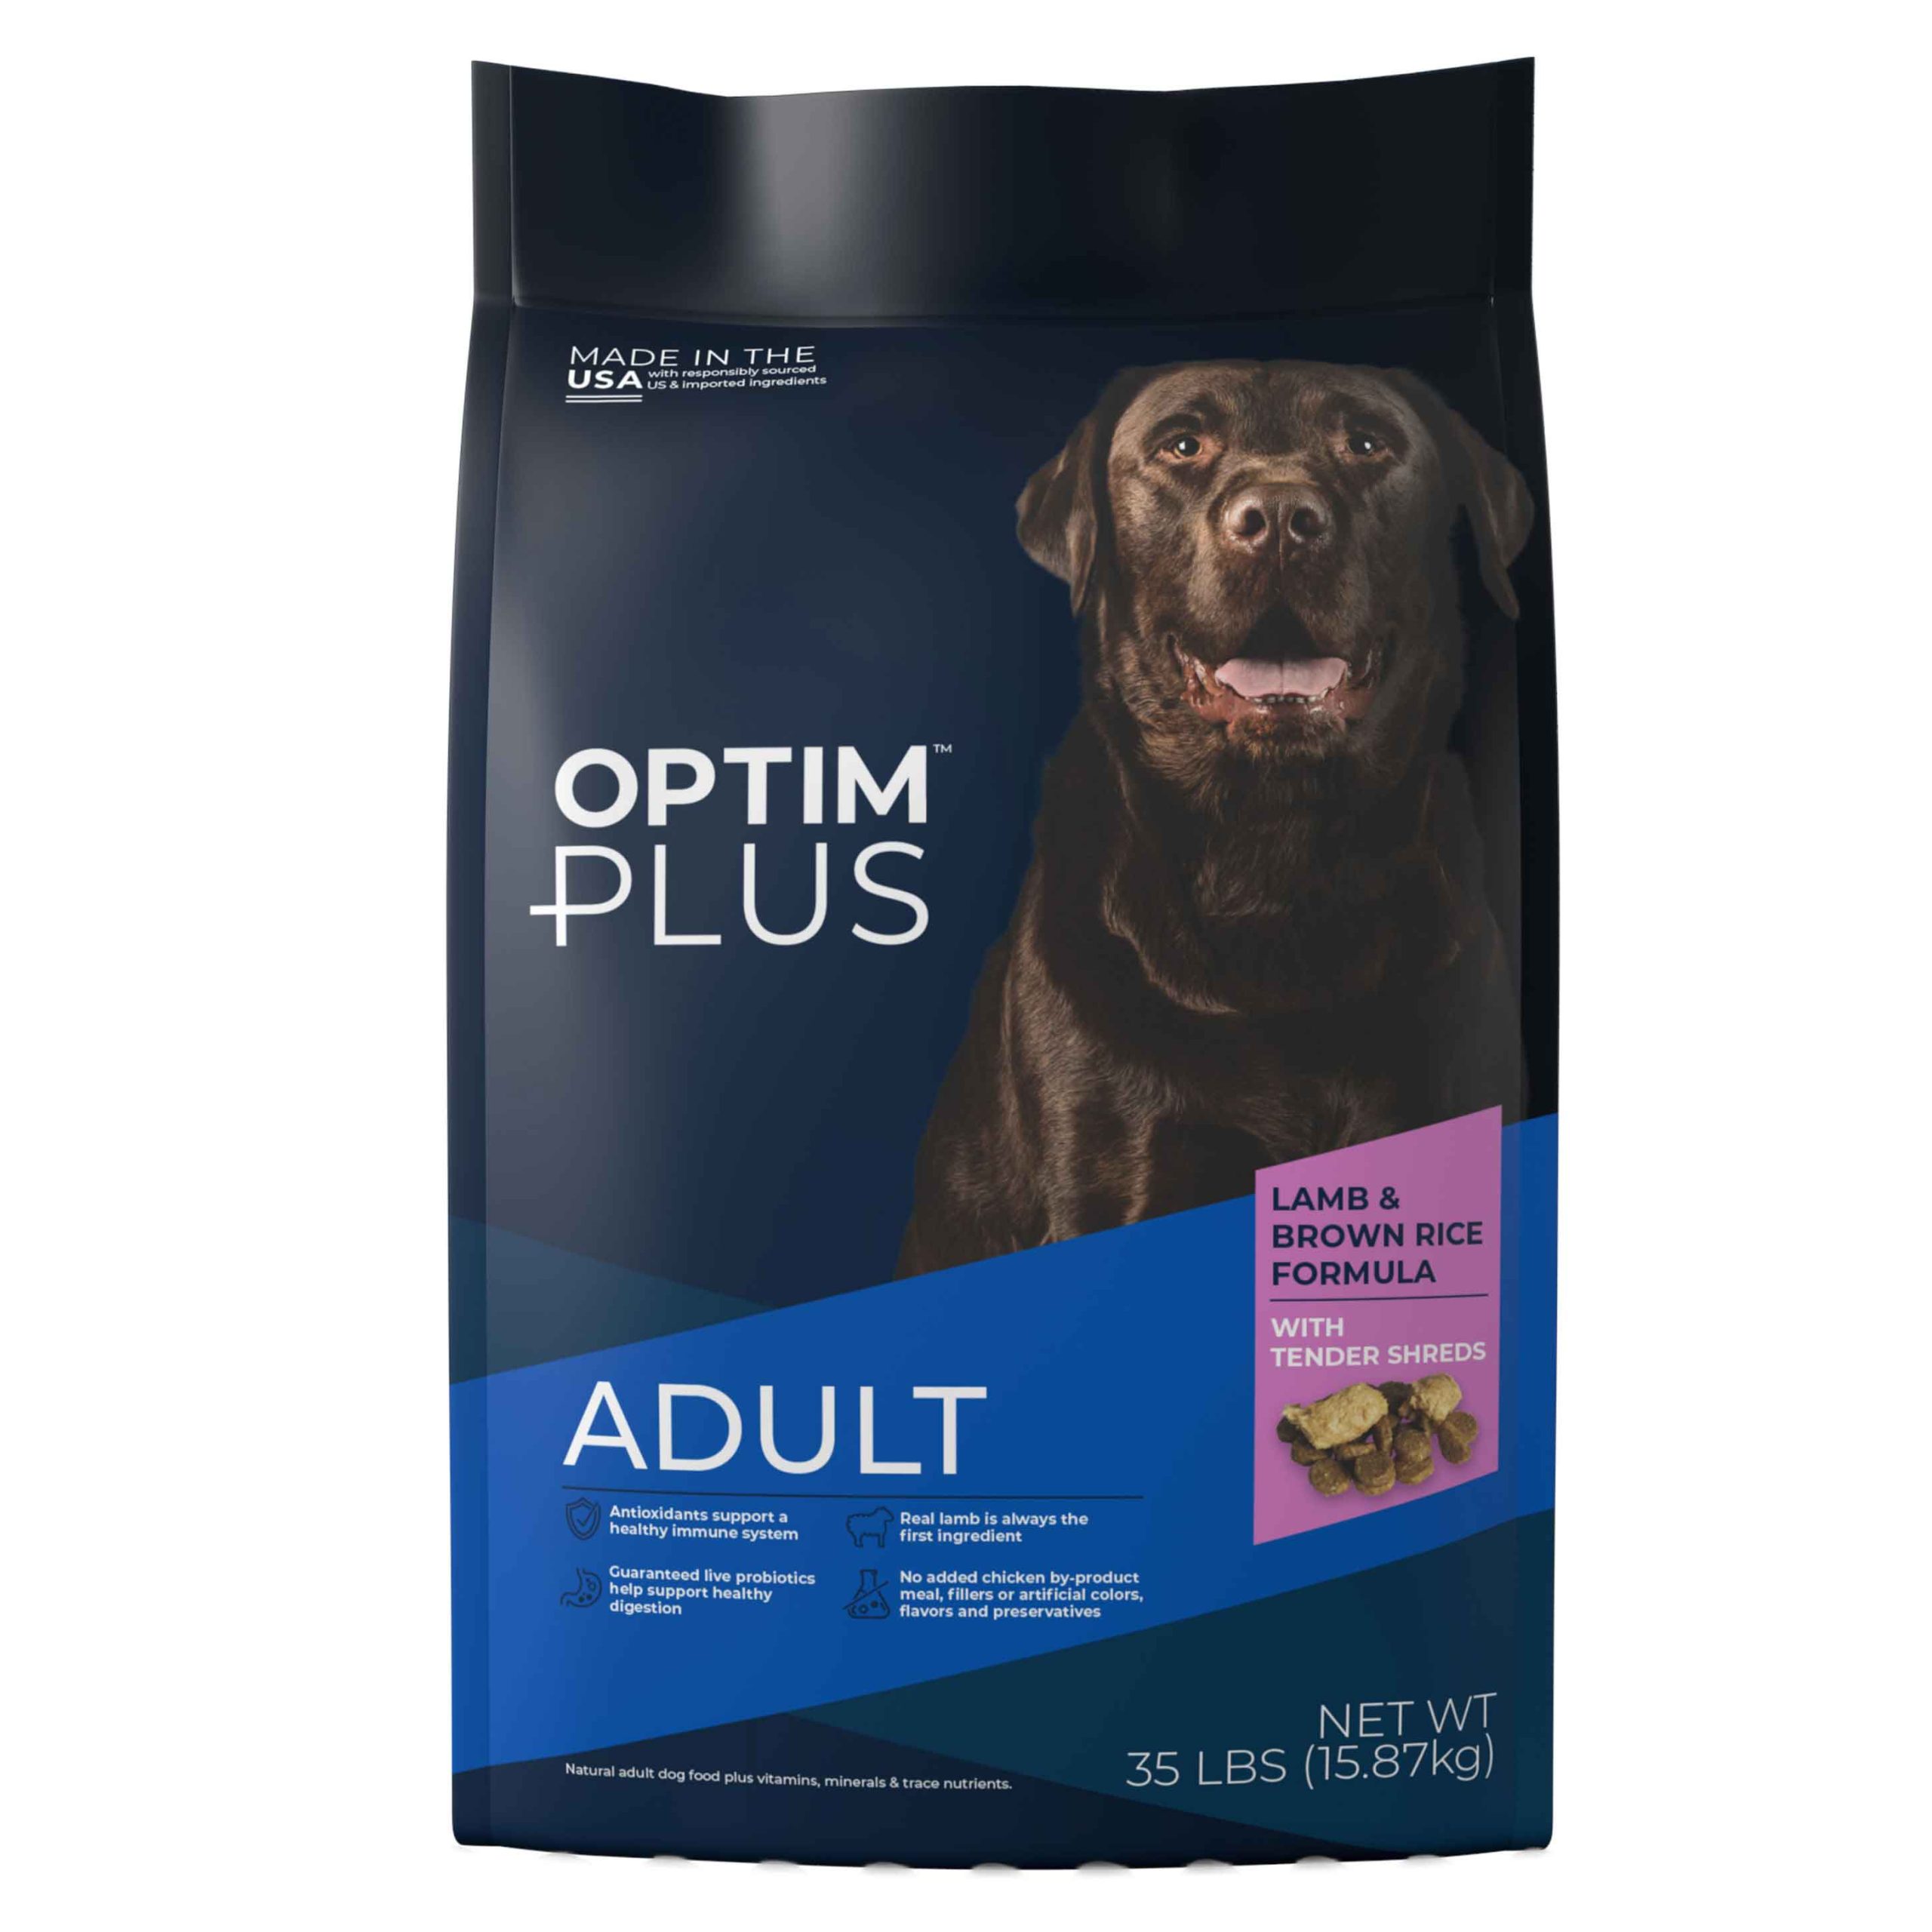 Optim Plus Dog Food Review